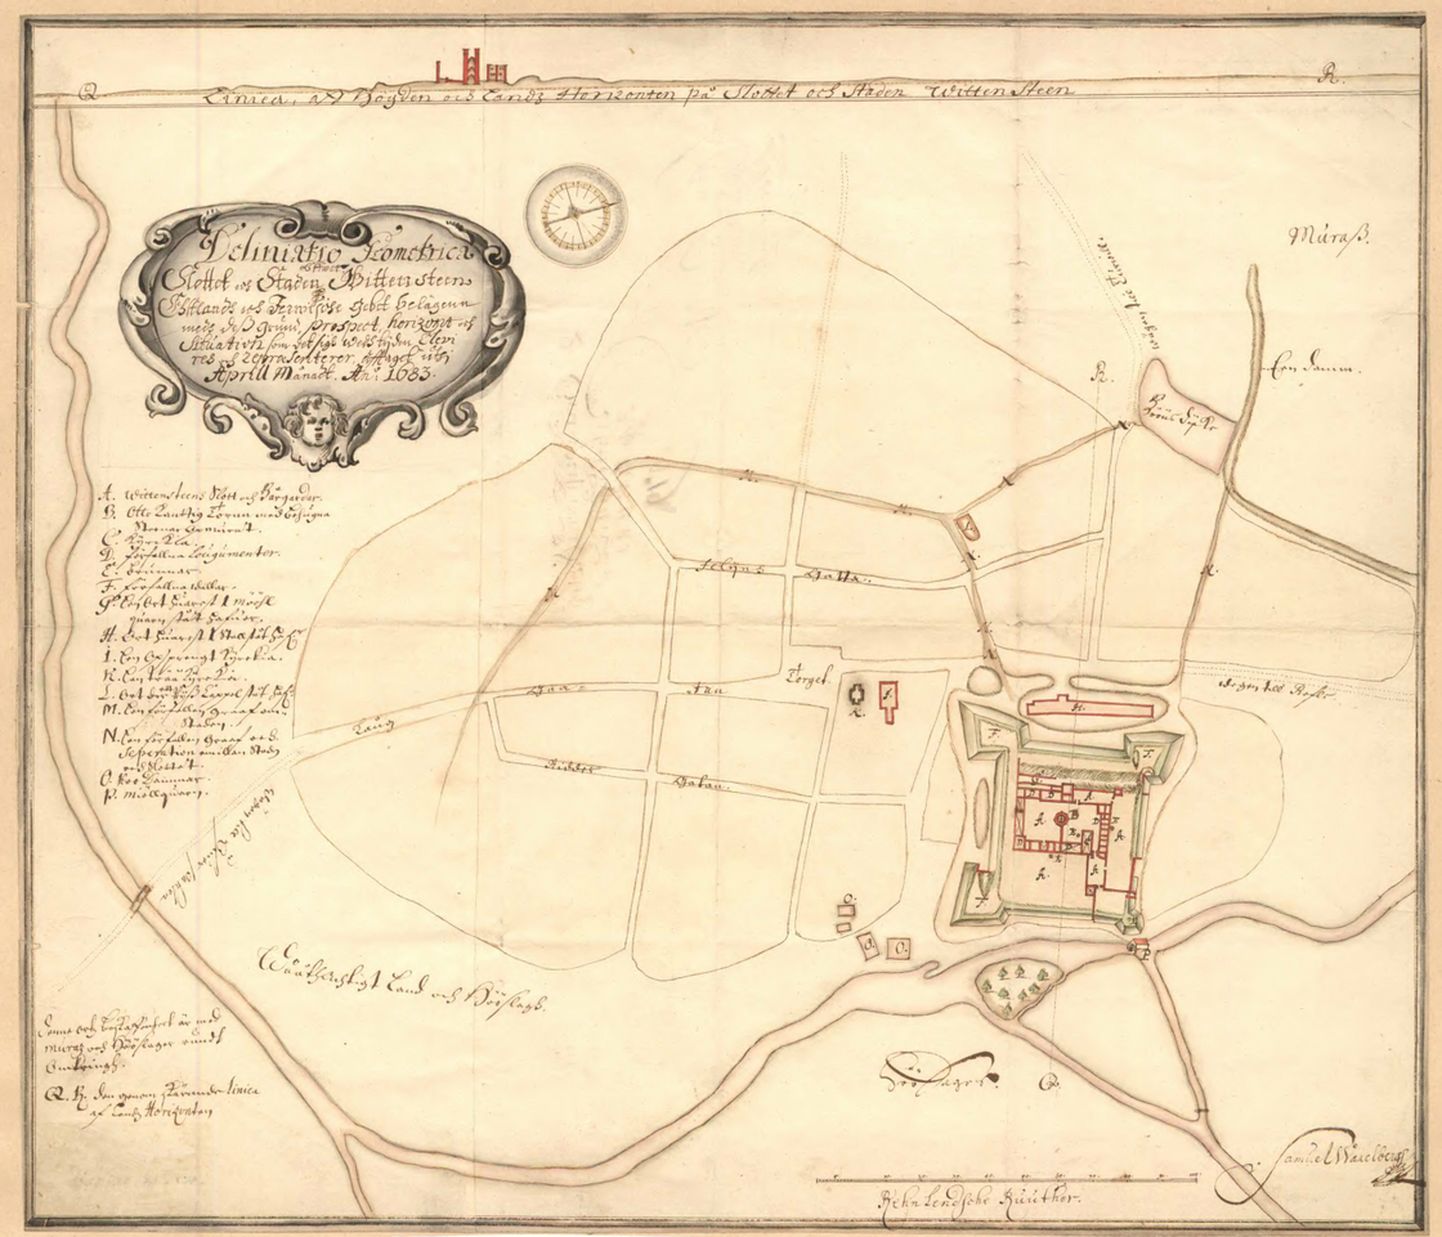 Paide linn 1683. aasta S. Waxelbergi kaardil. Rahvusarhiivis hoiul olevalt kaardilt on näha linnust ja vallikraavi, lisaks linna tänavate võrgustikku, mis on suuresti tänapäevani säilinud.